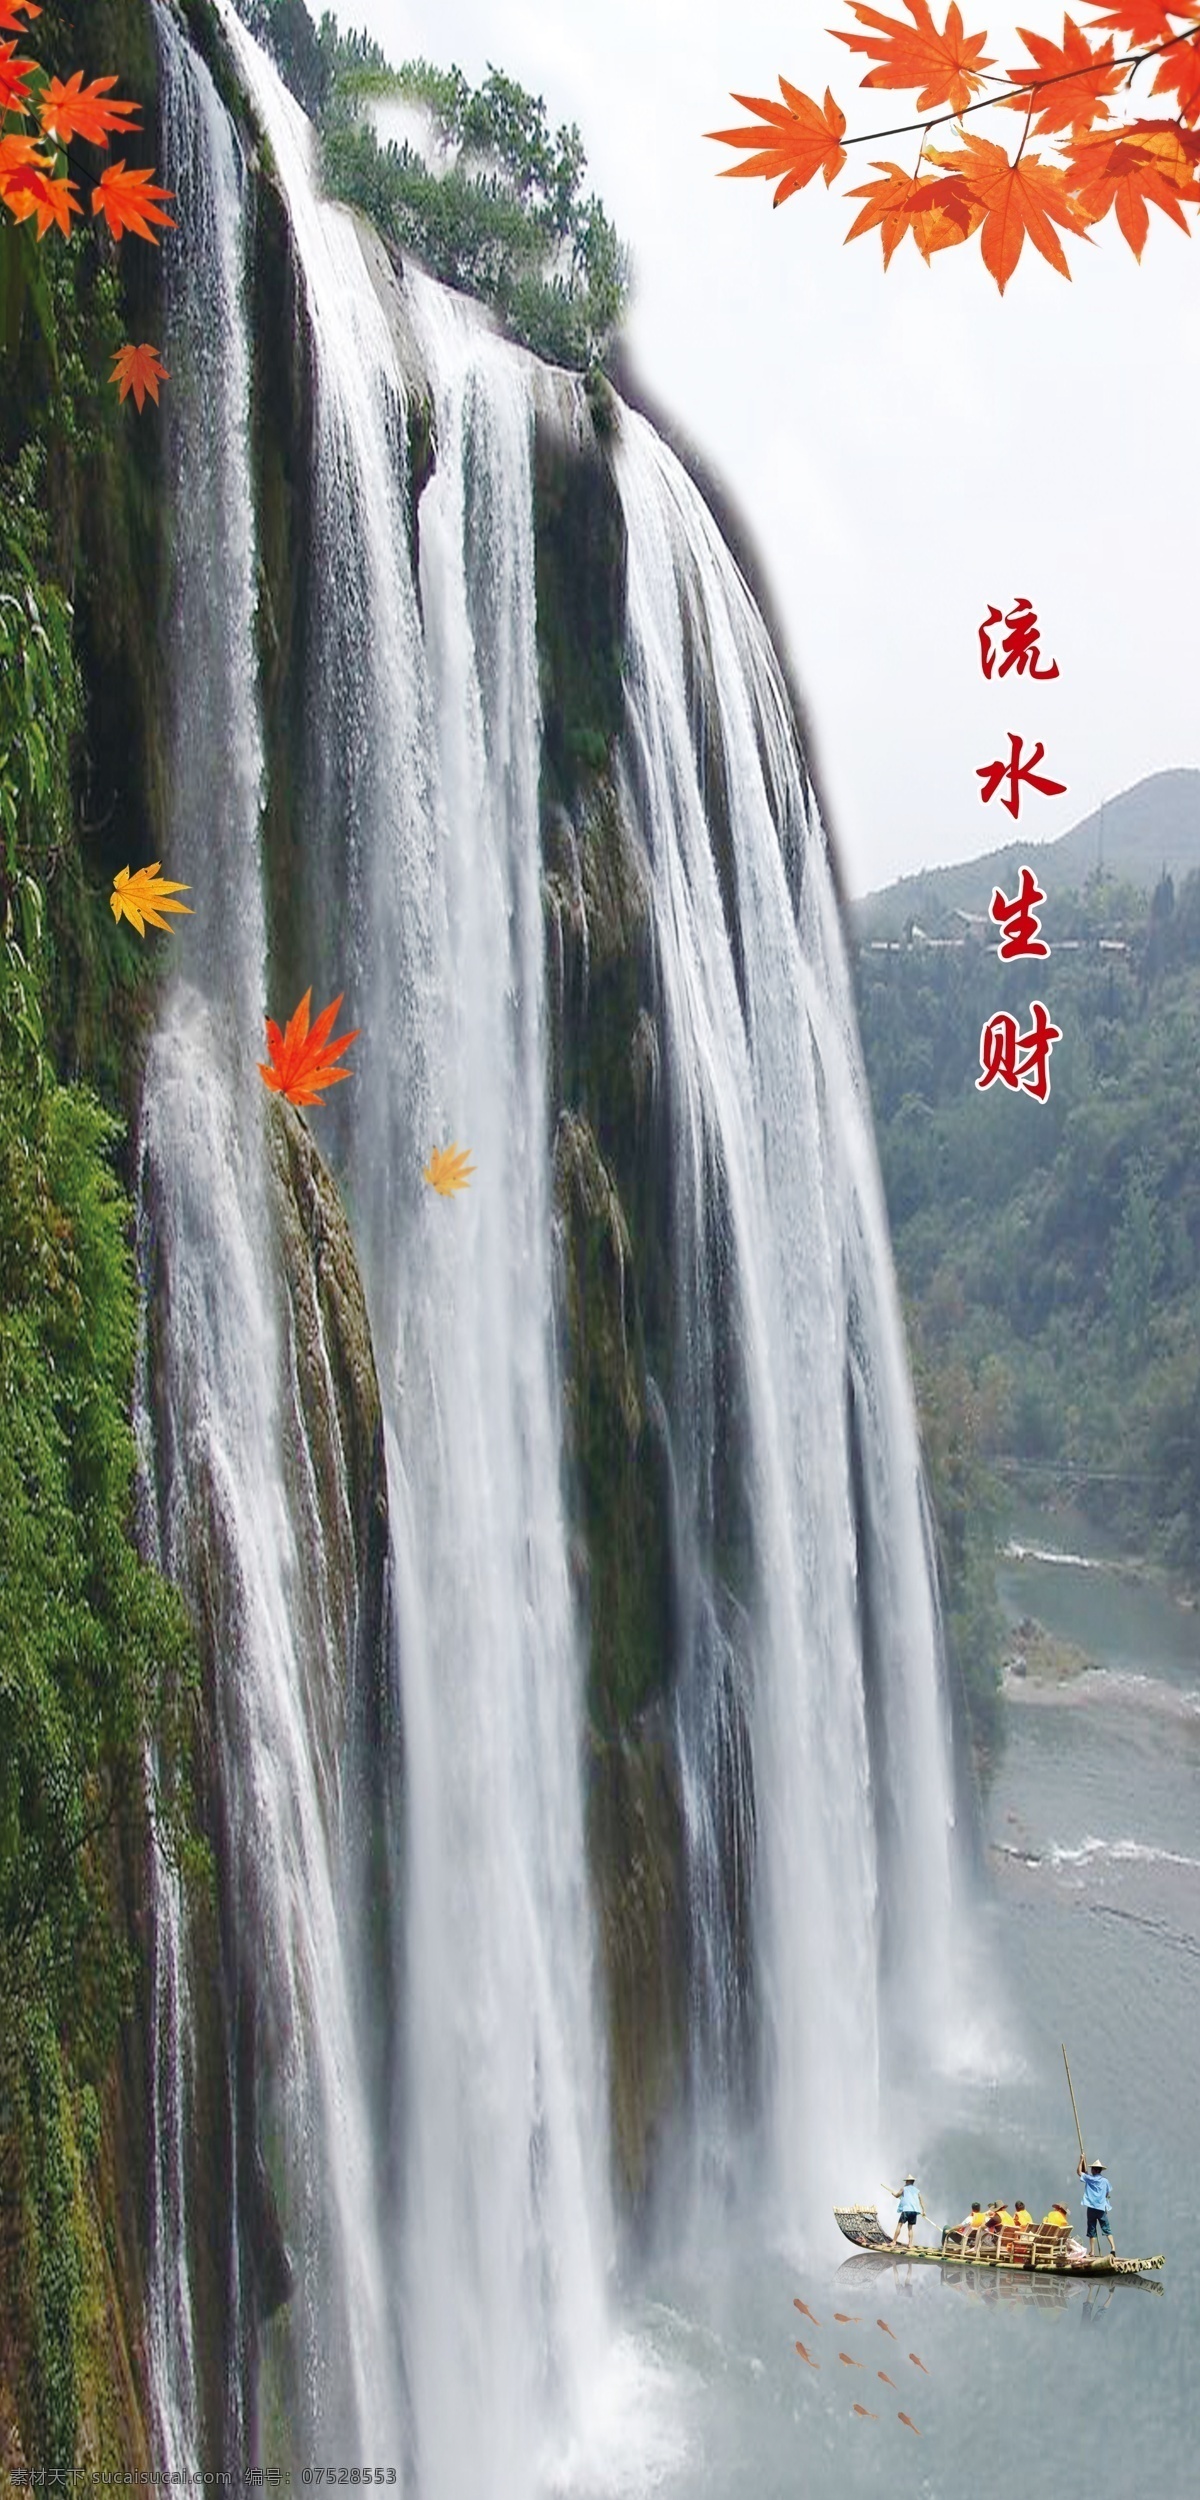 瀑布图片 河道石头 瀑布 自然景观 山水风景